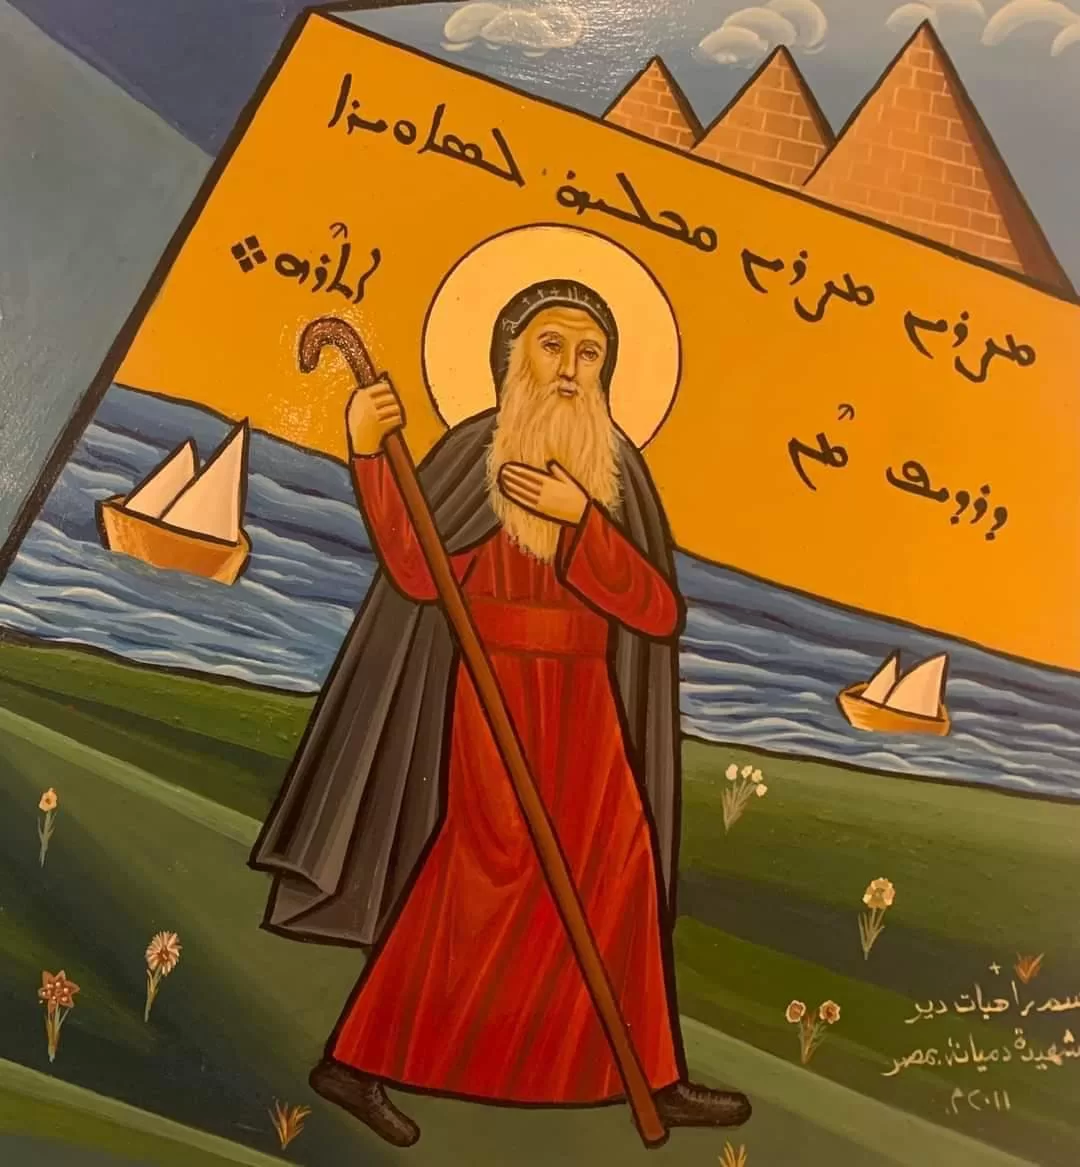 الكنيسة السريانية الأرثوذكسية تحتفل بتذكار مار سويريوس تاج السريان